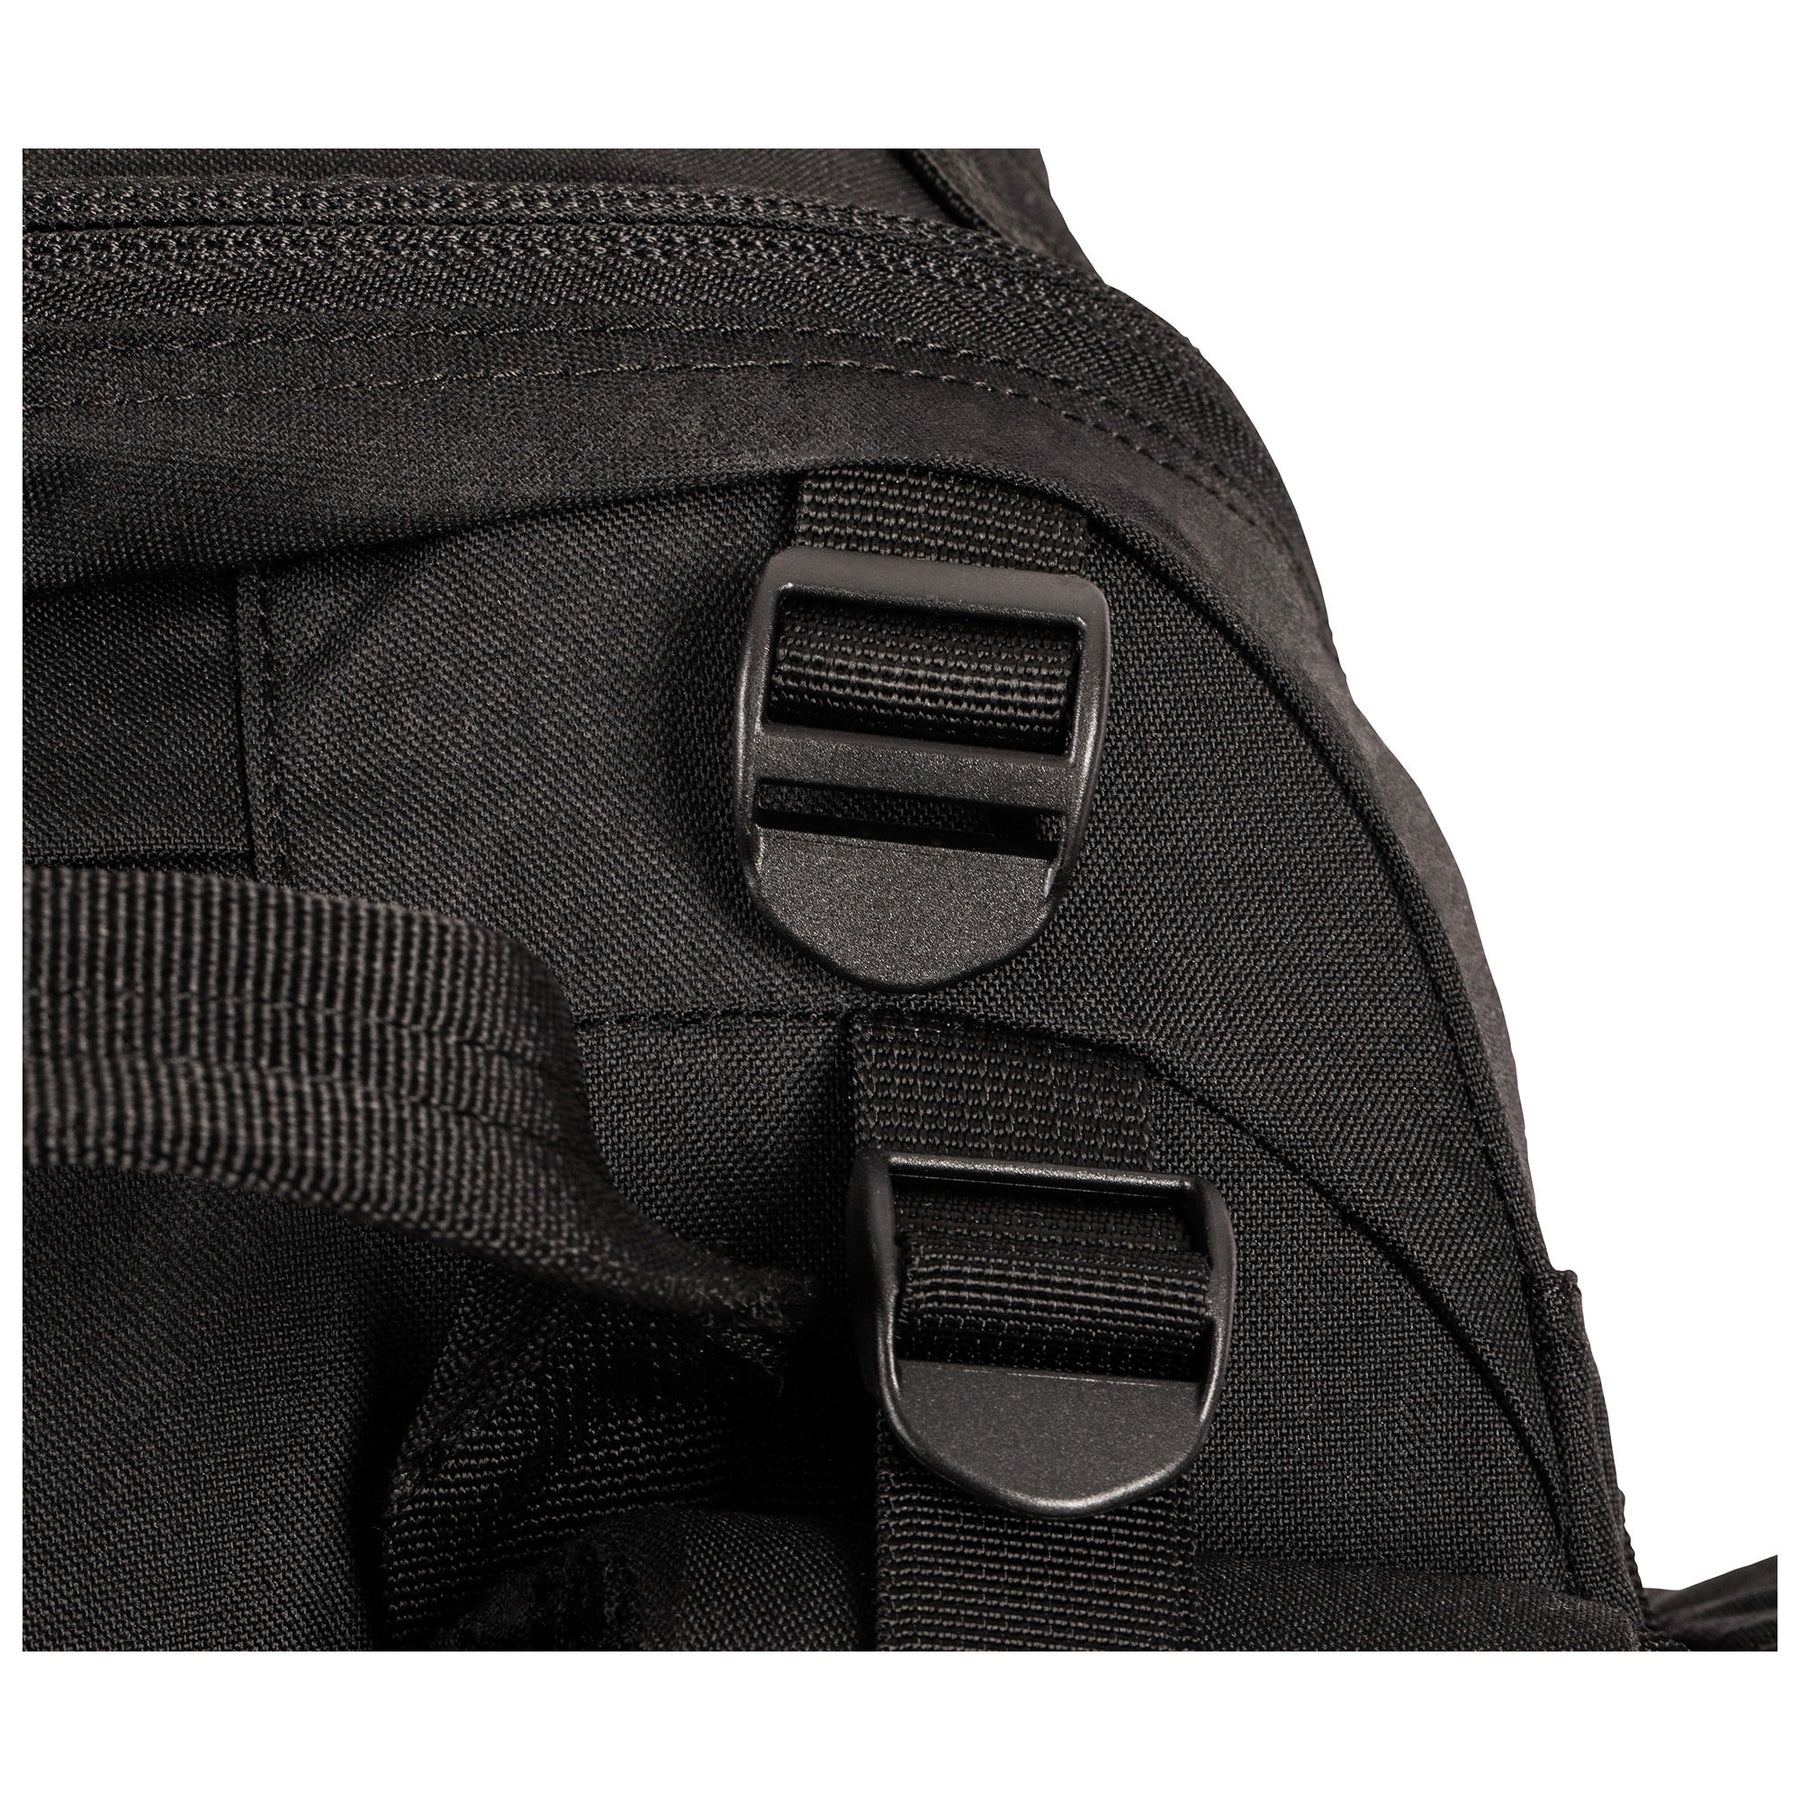 ZAINO RUSH100 60 litri di 5.11 Tactical Black (nero) - vista dettaglio fibbia cinghia di carico regolabile